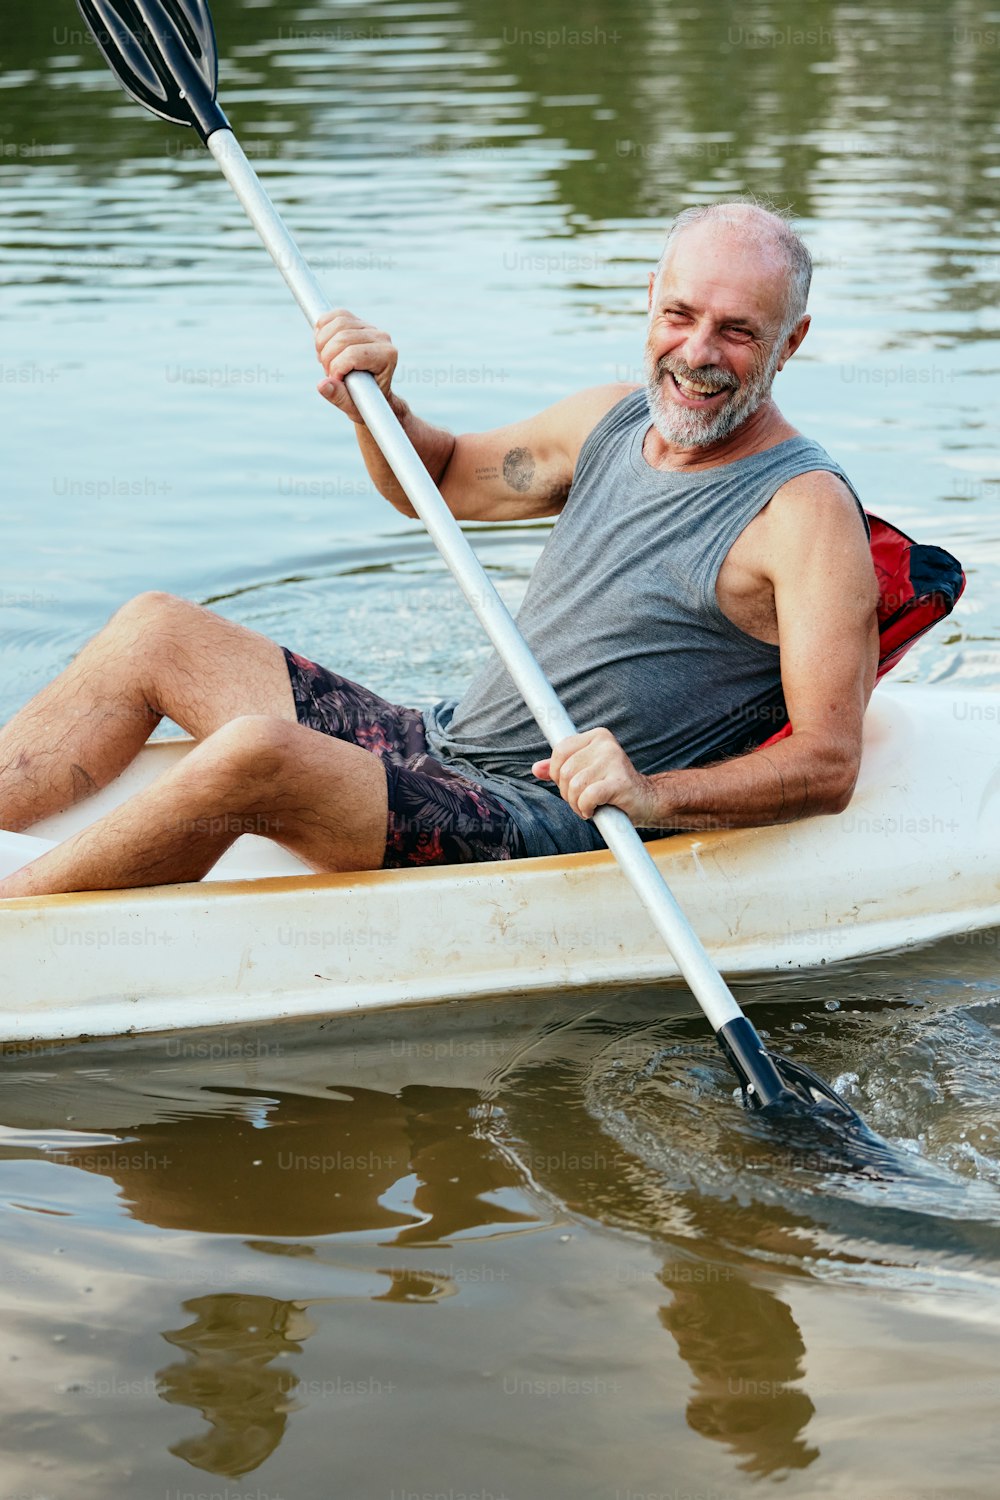 Un uomo sta pagaiando una canoa sull'acqua